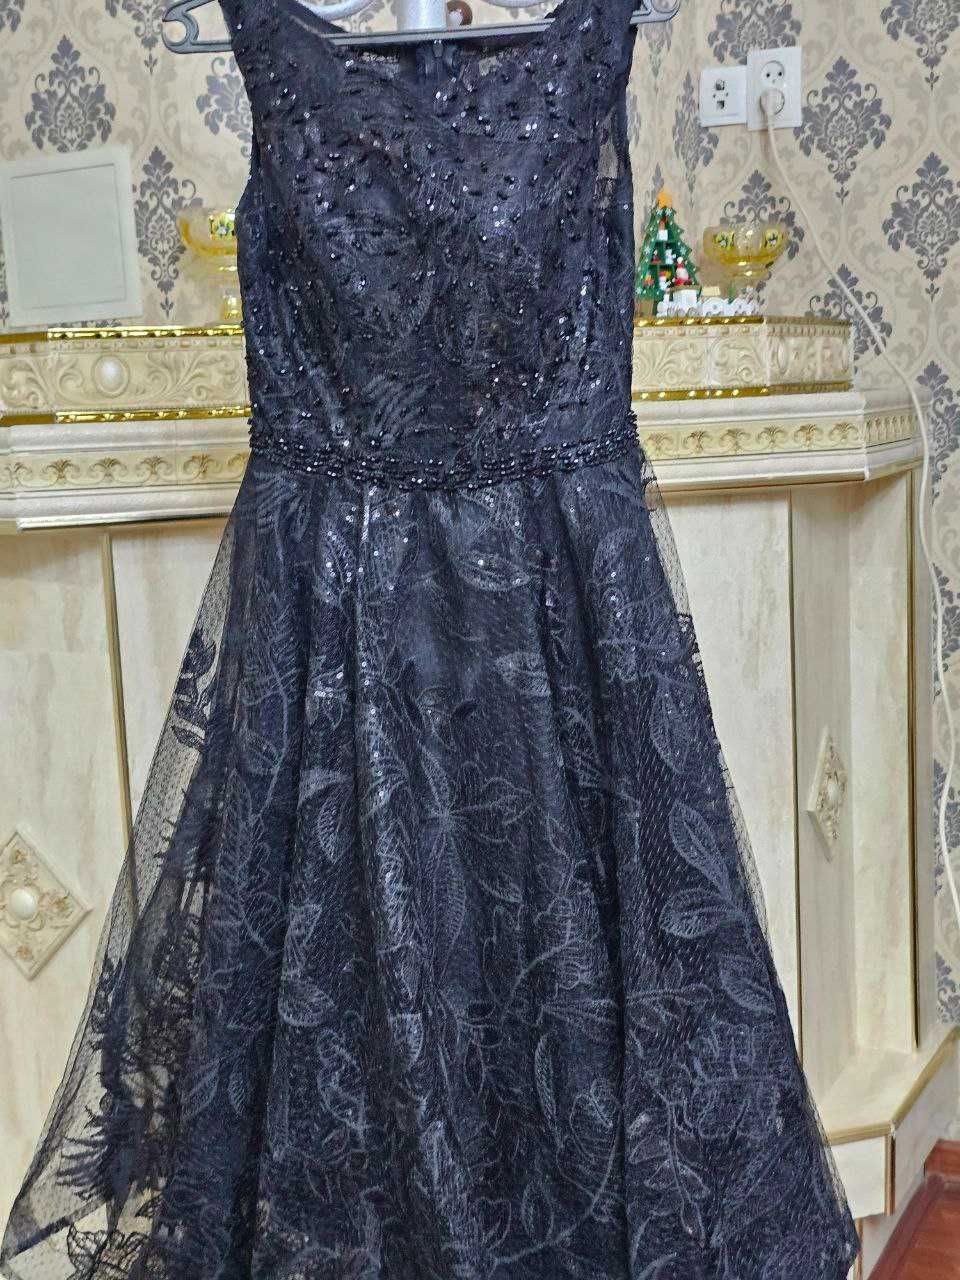 Платье женское Турция